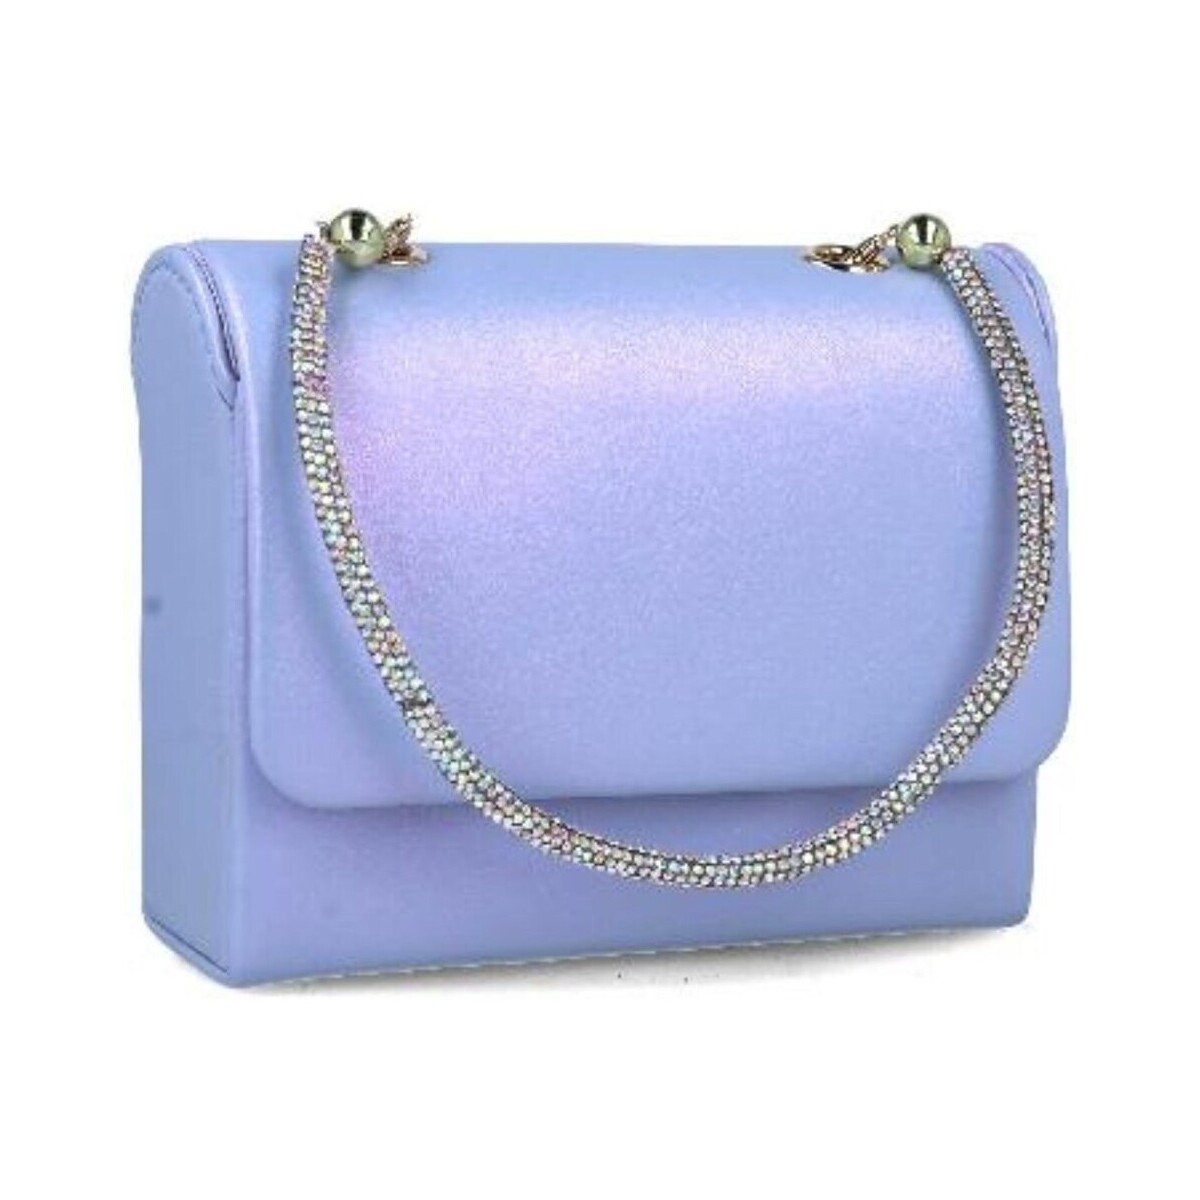 Taschen Damen Geldtasche / Handtasche Menbur 85576 Violett